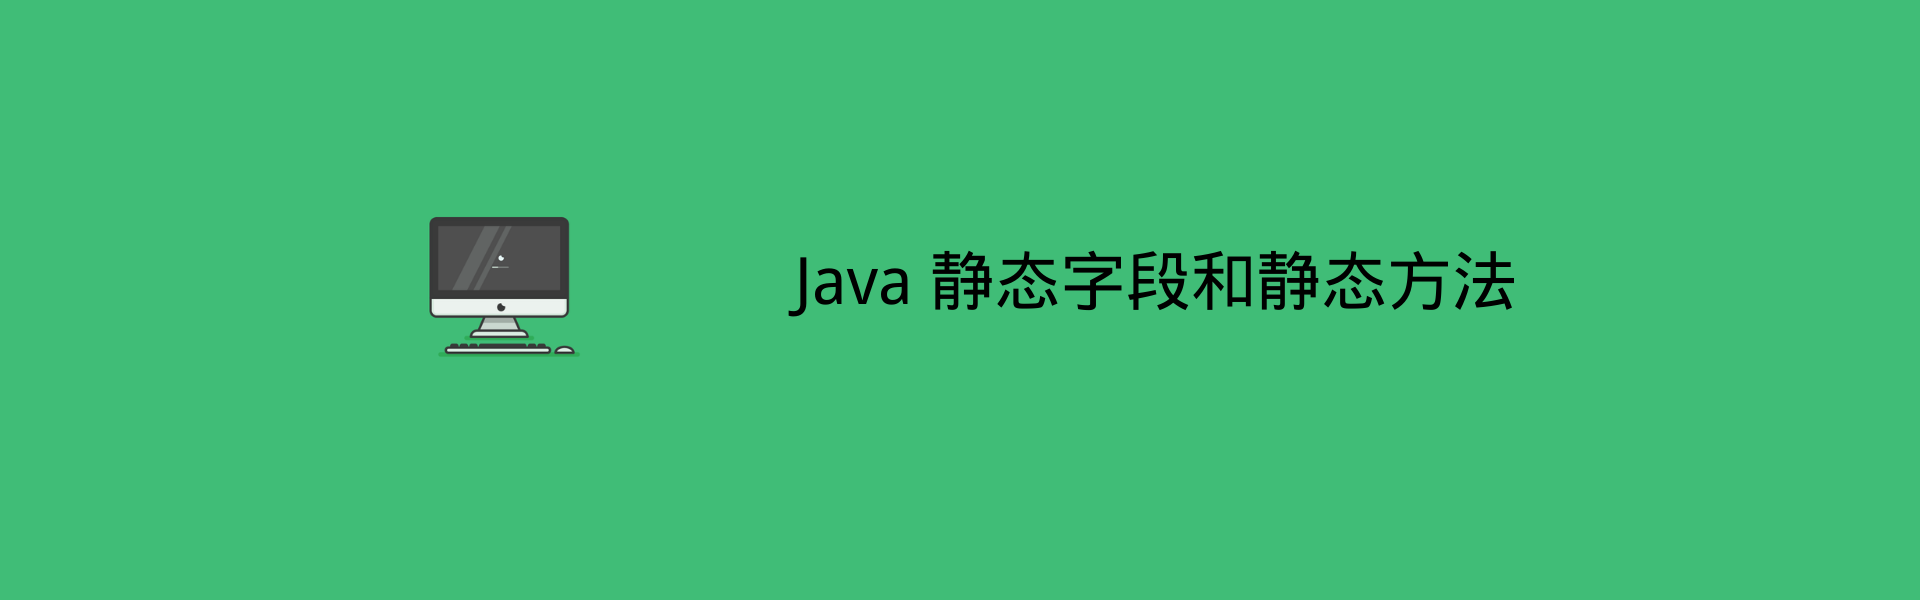 Java 中的静态字段和静态方法